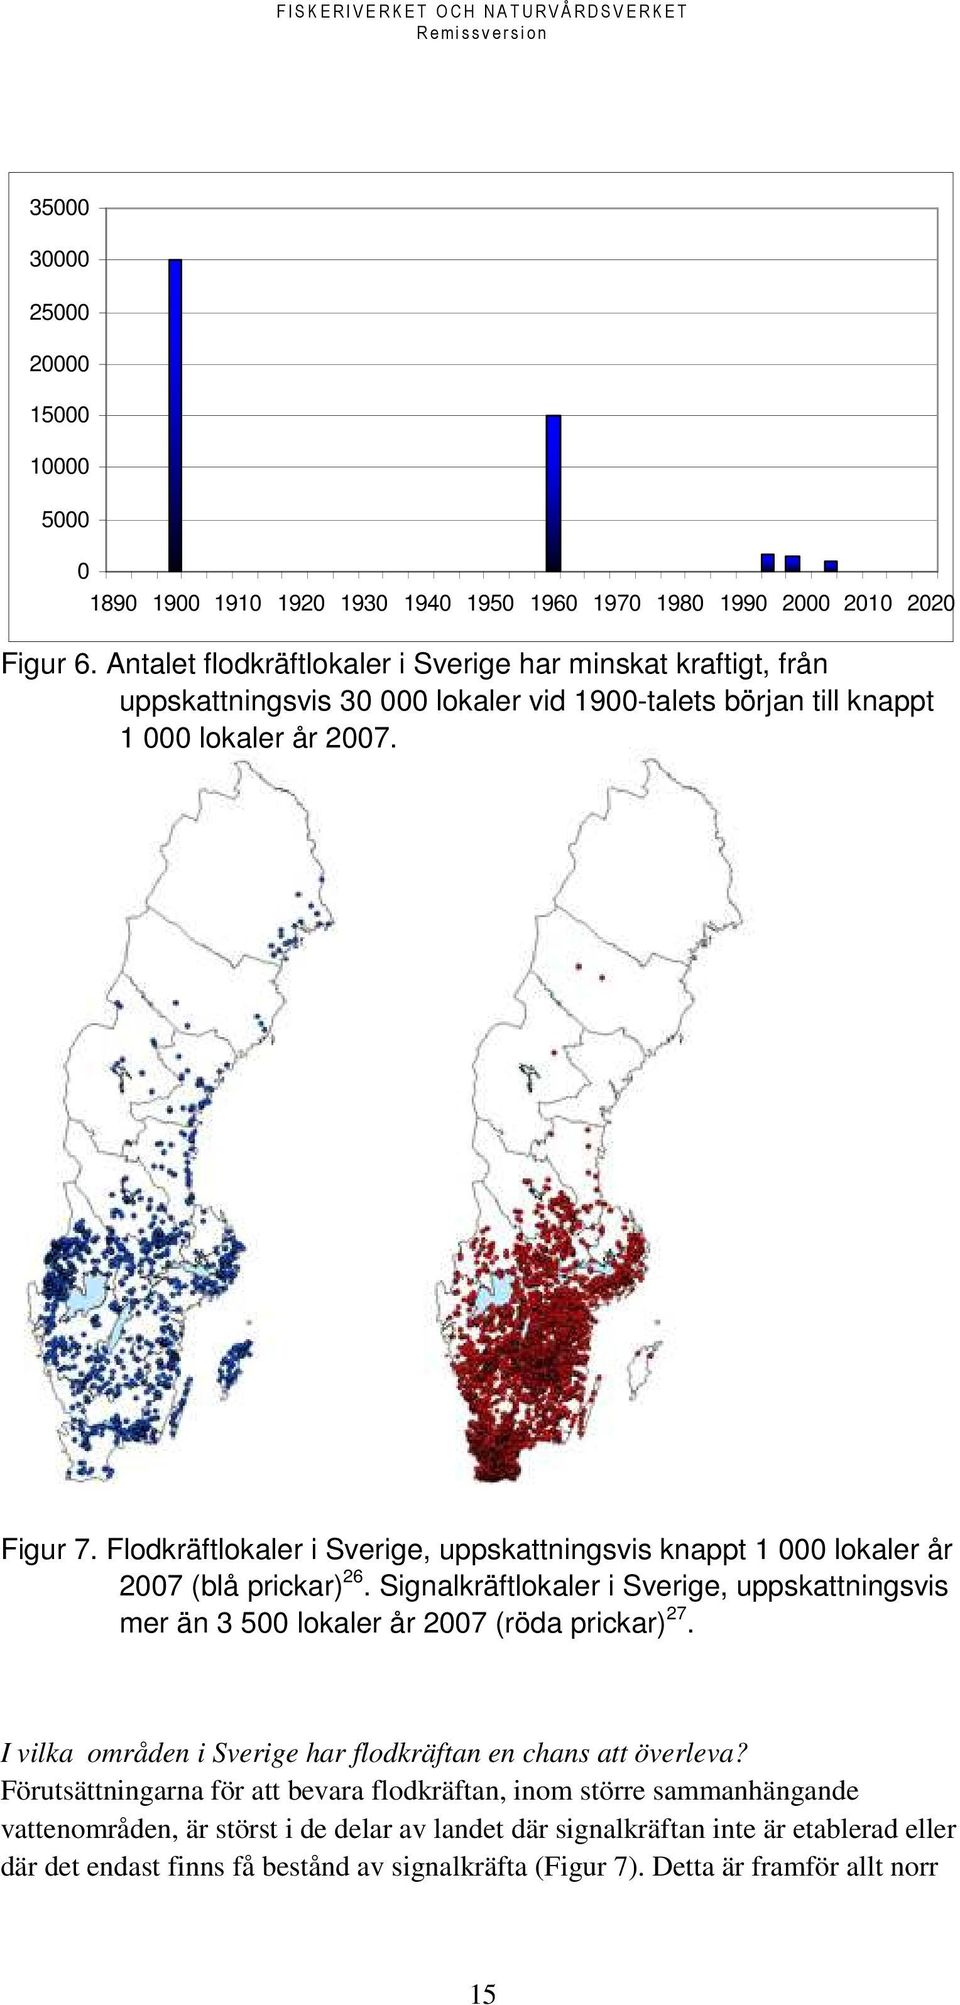 Flodkräftlokaler i Sverige, uppskattningsvis knappt 1 000 lokaler år 2007 (blå prickar) 26. Signalkräftlokaler i Sverige, uppskattningsvis mer än 3 500 lokaler år 2007 (röda prickar) 27.